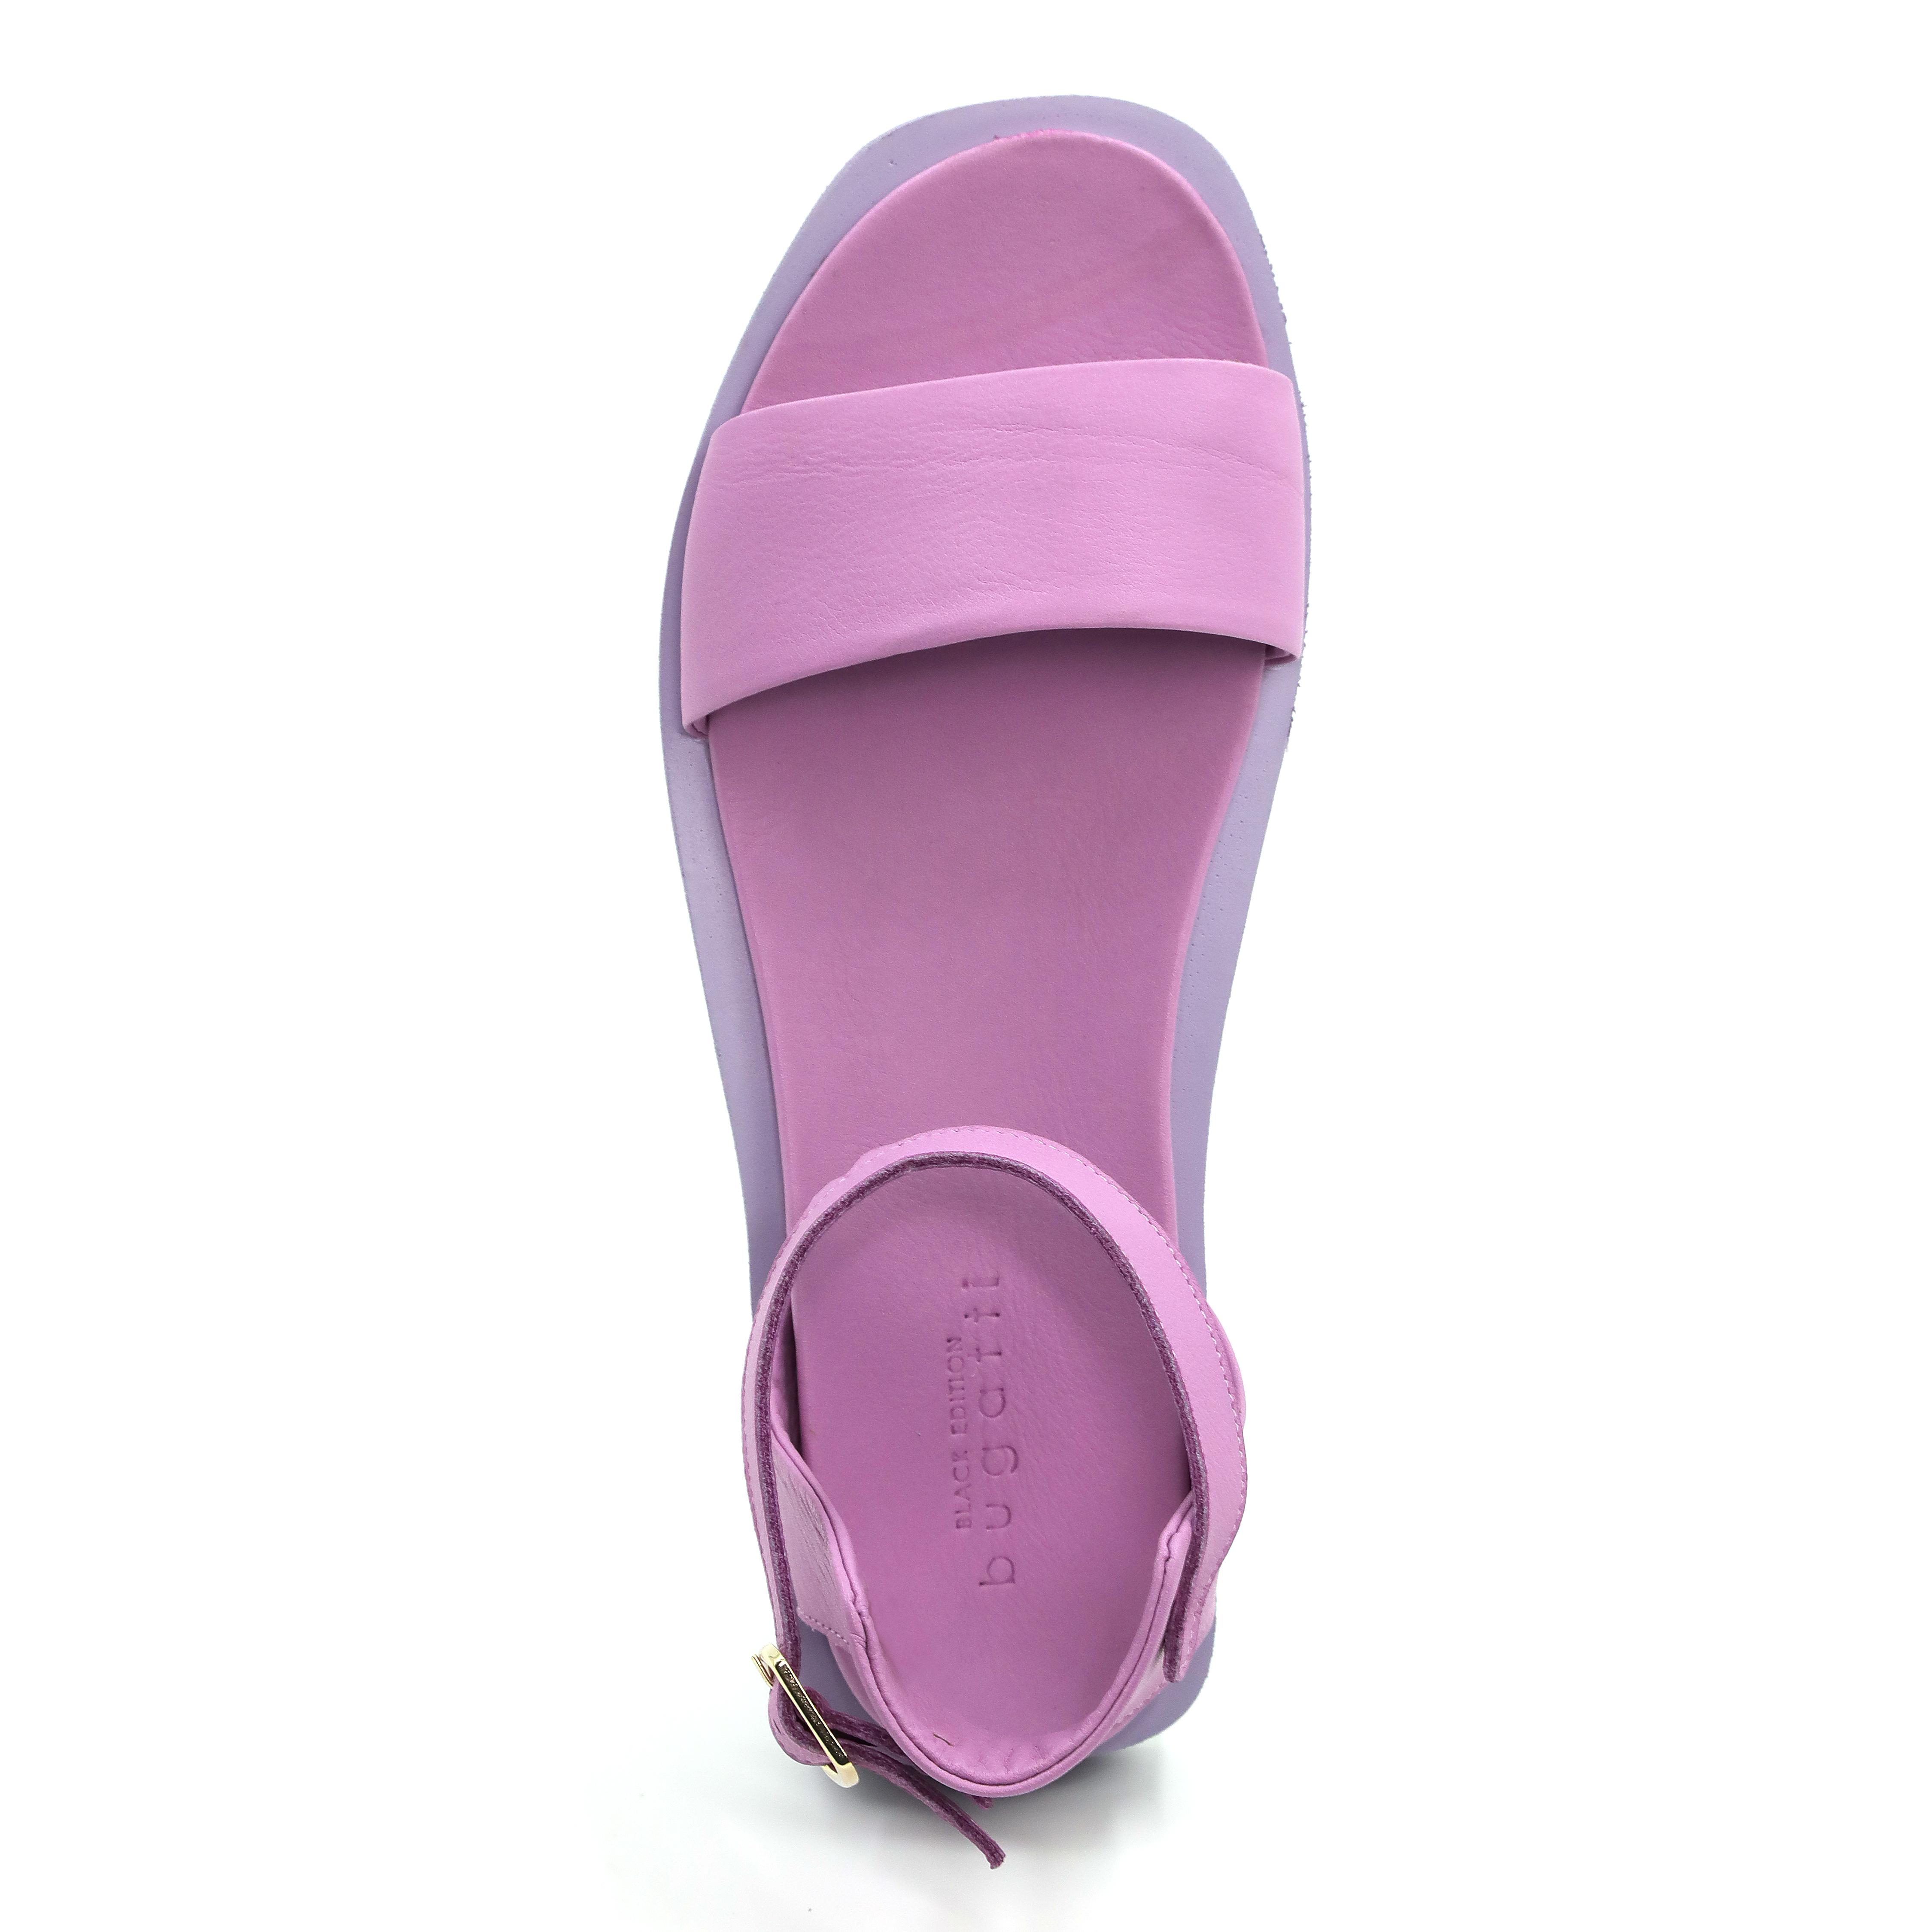 Женские сандалии Bugatti, фиолетовые, цвет фиолетовый, размер 36 - фото 4